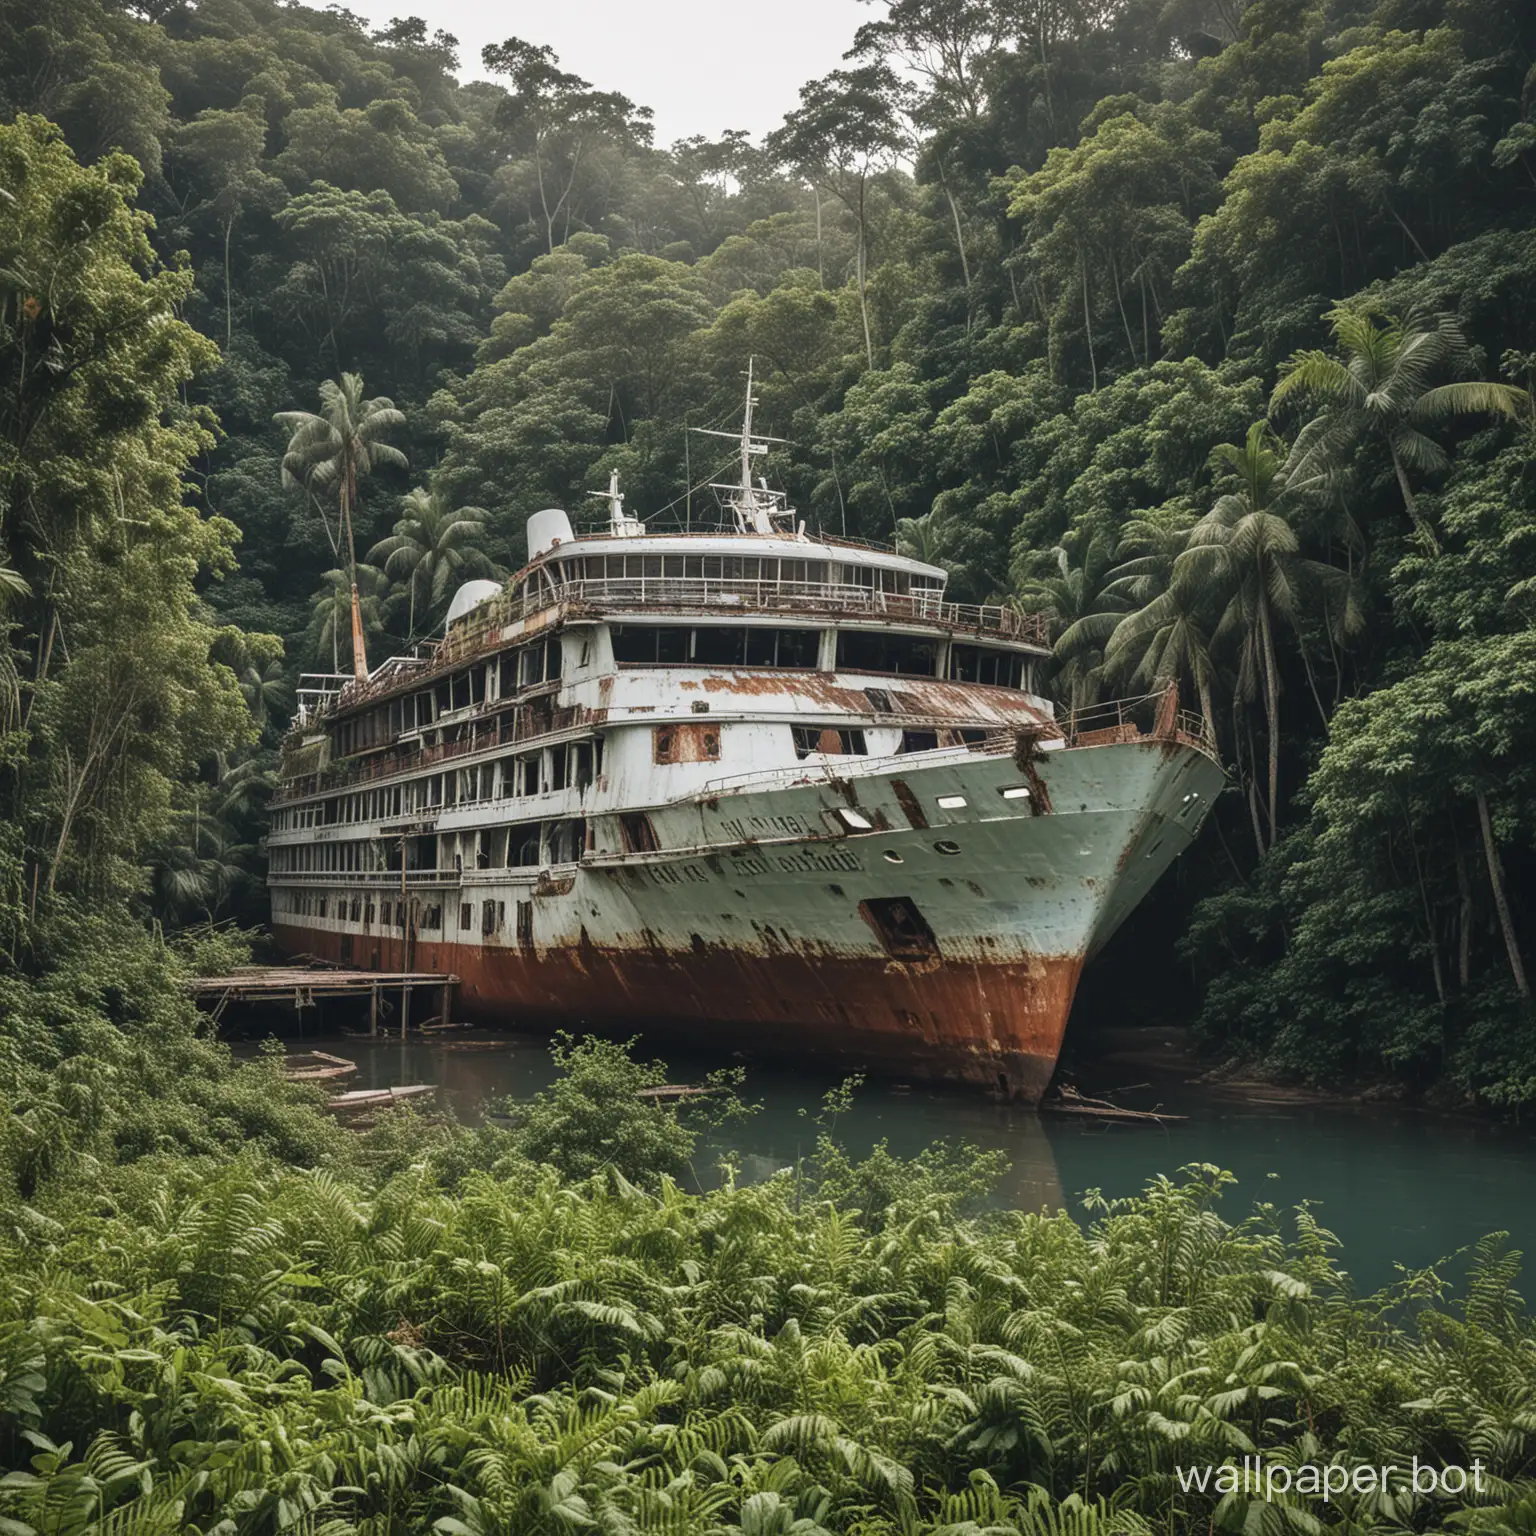 Abandoned-Cruise-Ship-on-Jungle-Coastline